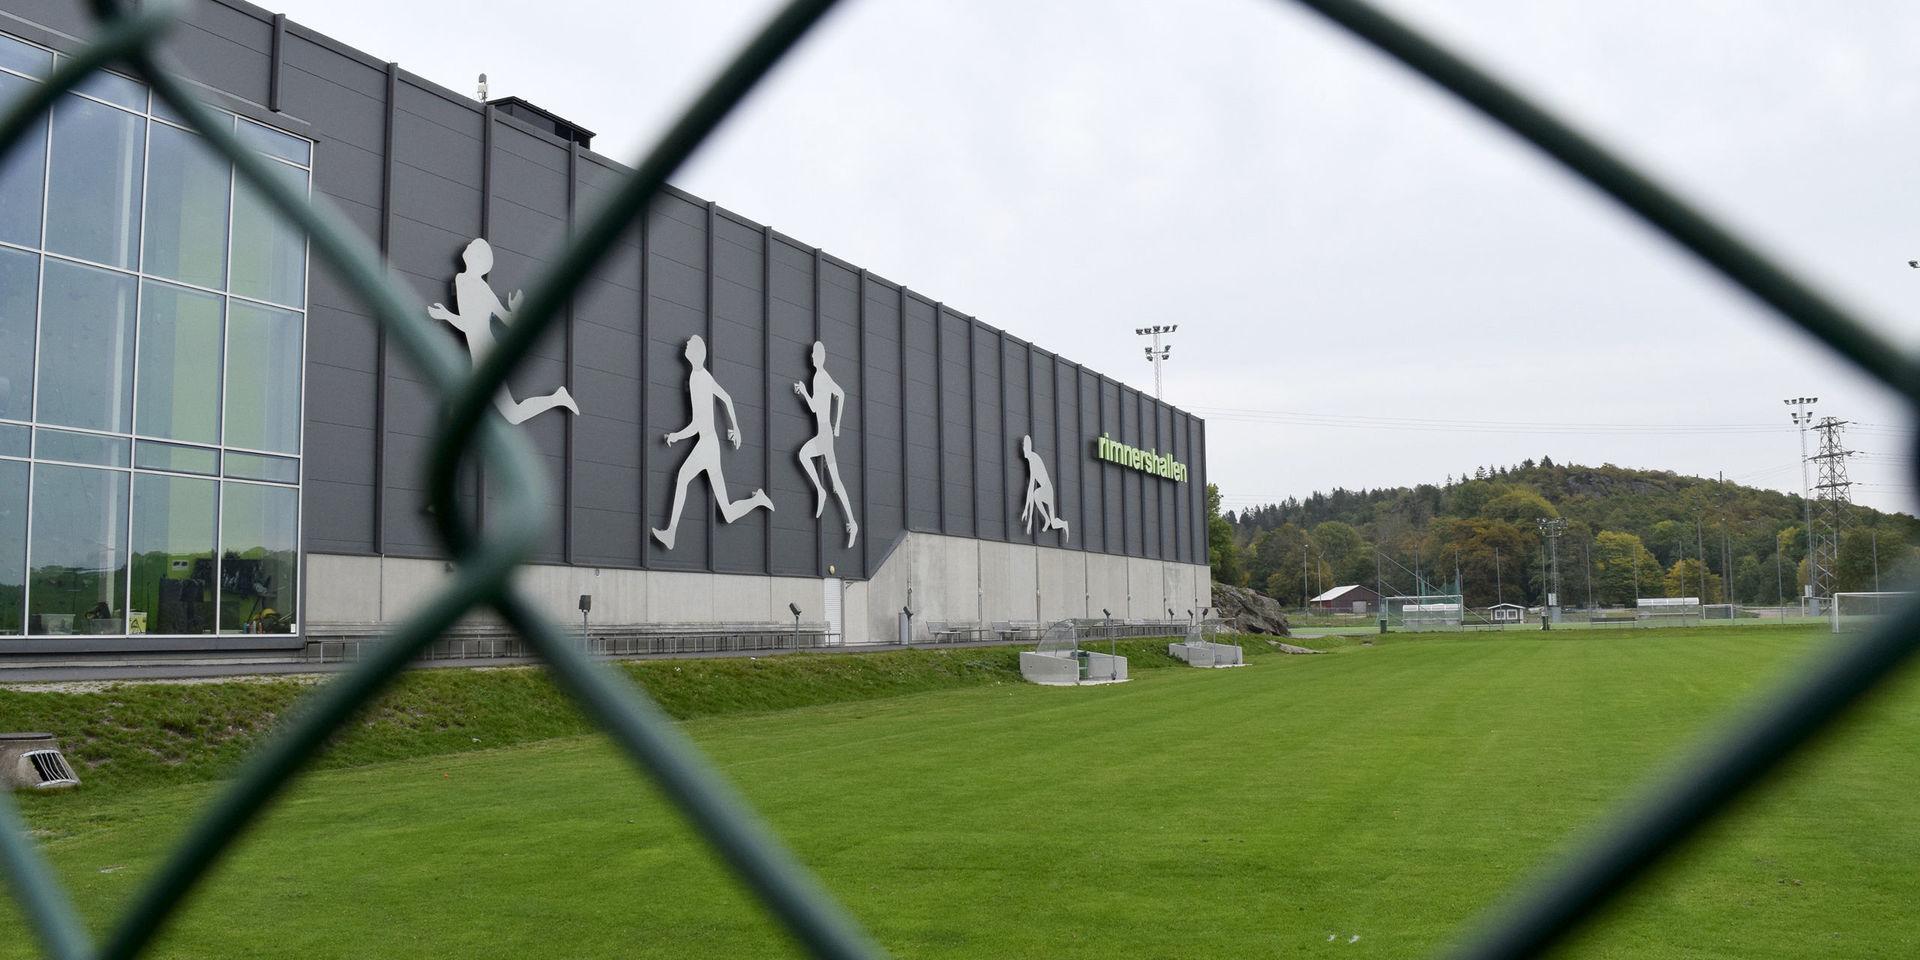 Rimnershallen Uddevalla träningsanläggning träning idrottshall idrott